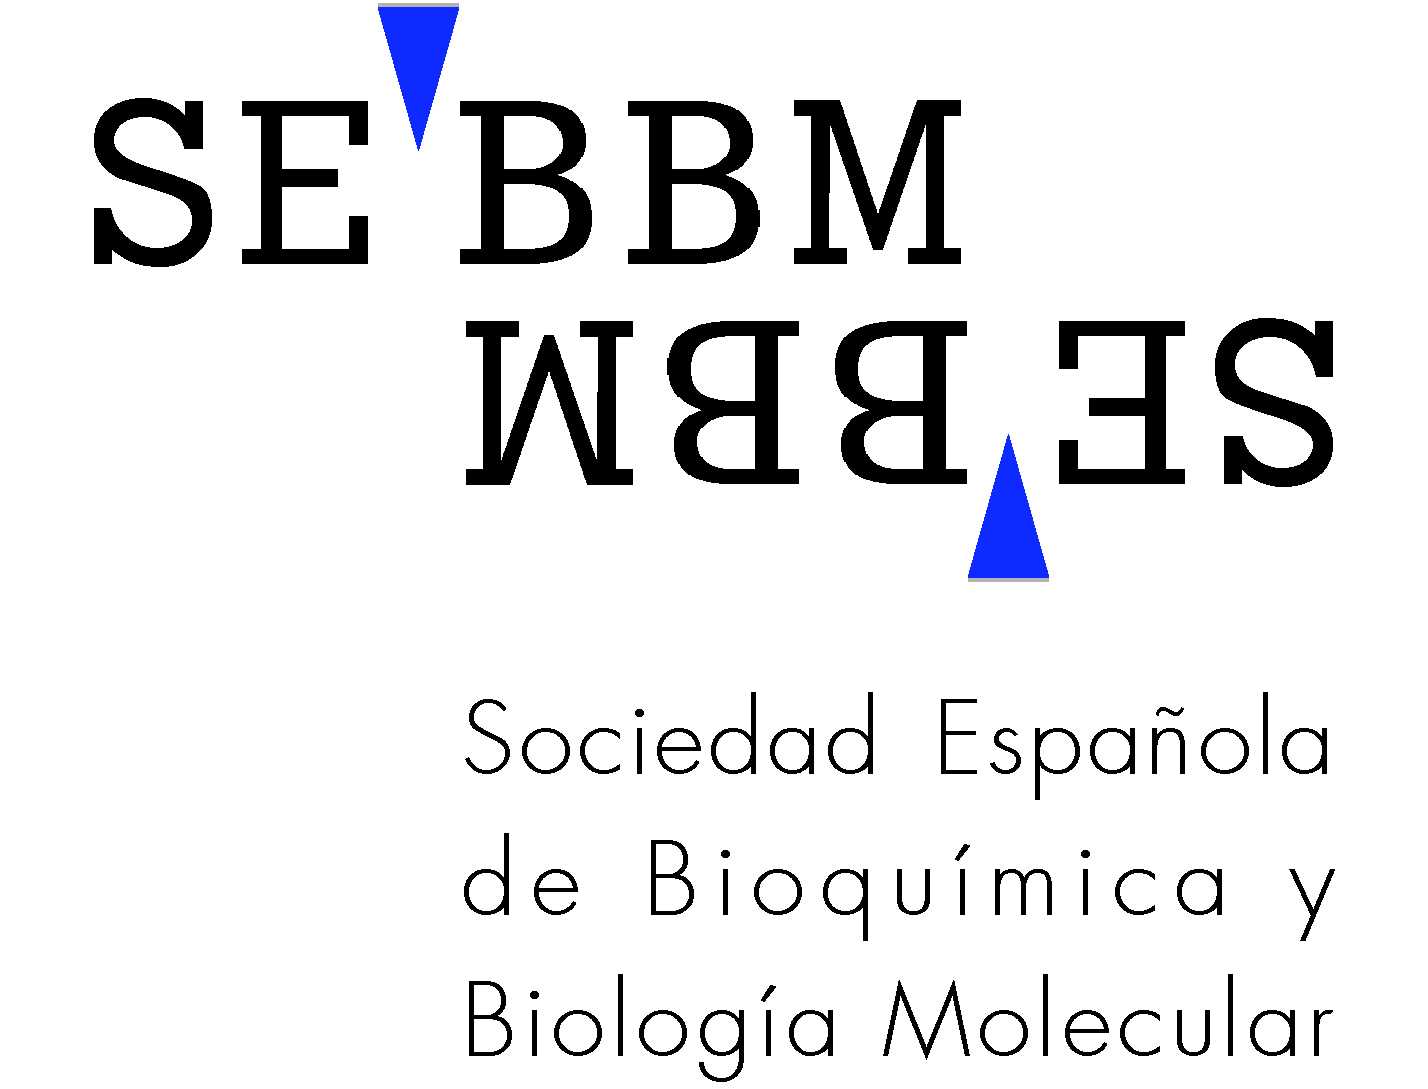 Sociedad Española de Bioquímica y Biología Molecular (SEBBM) (Madrid)